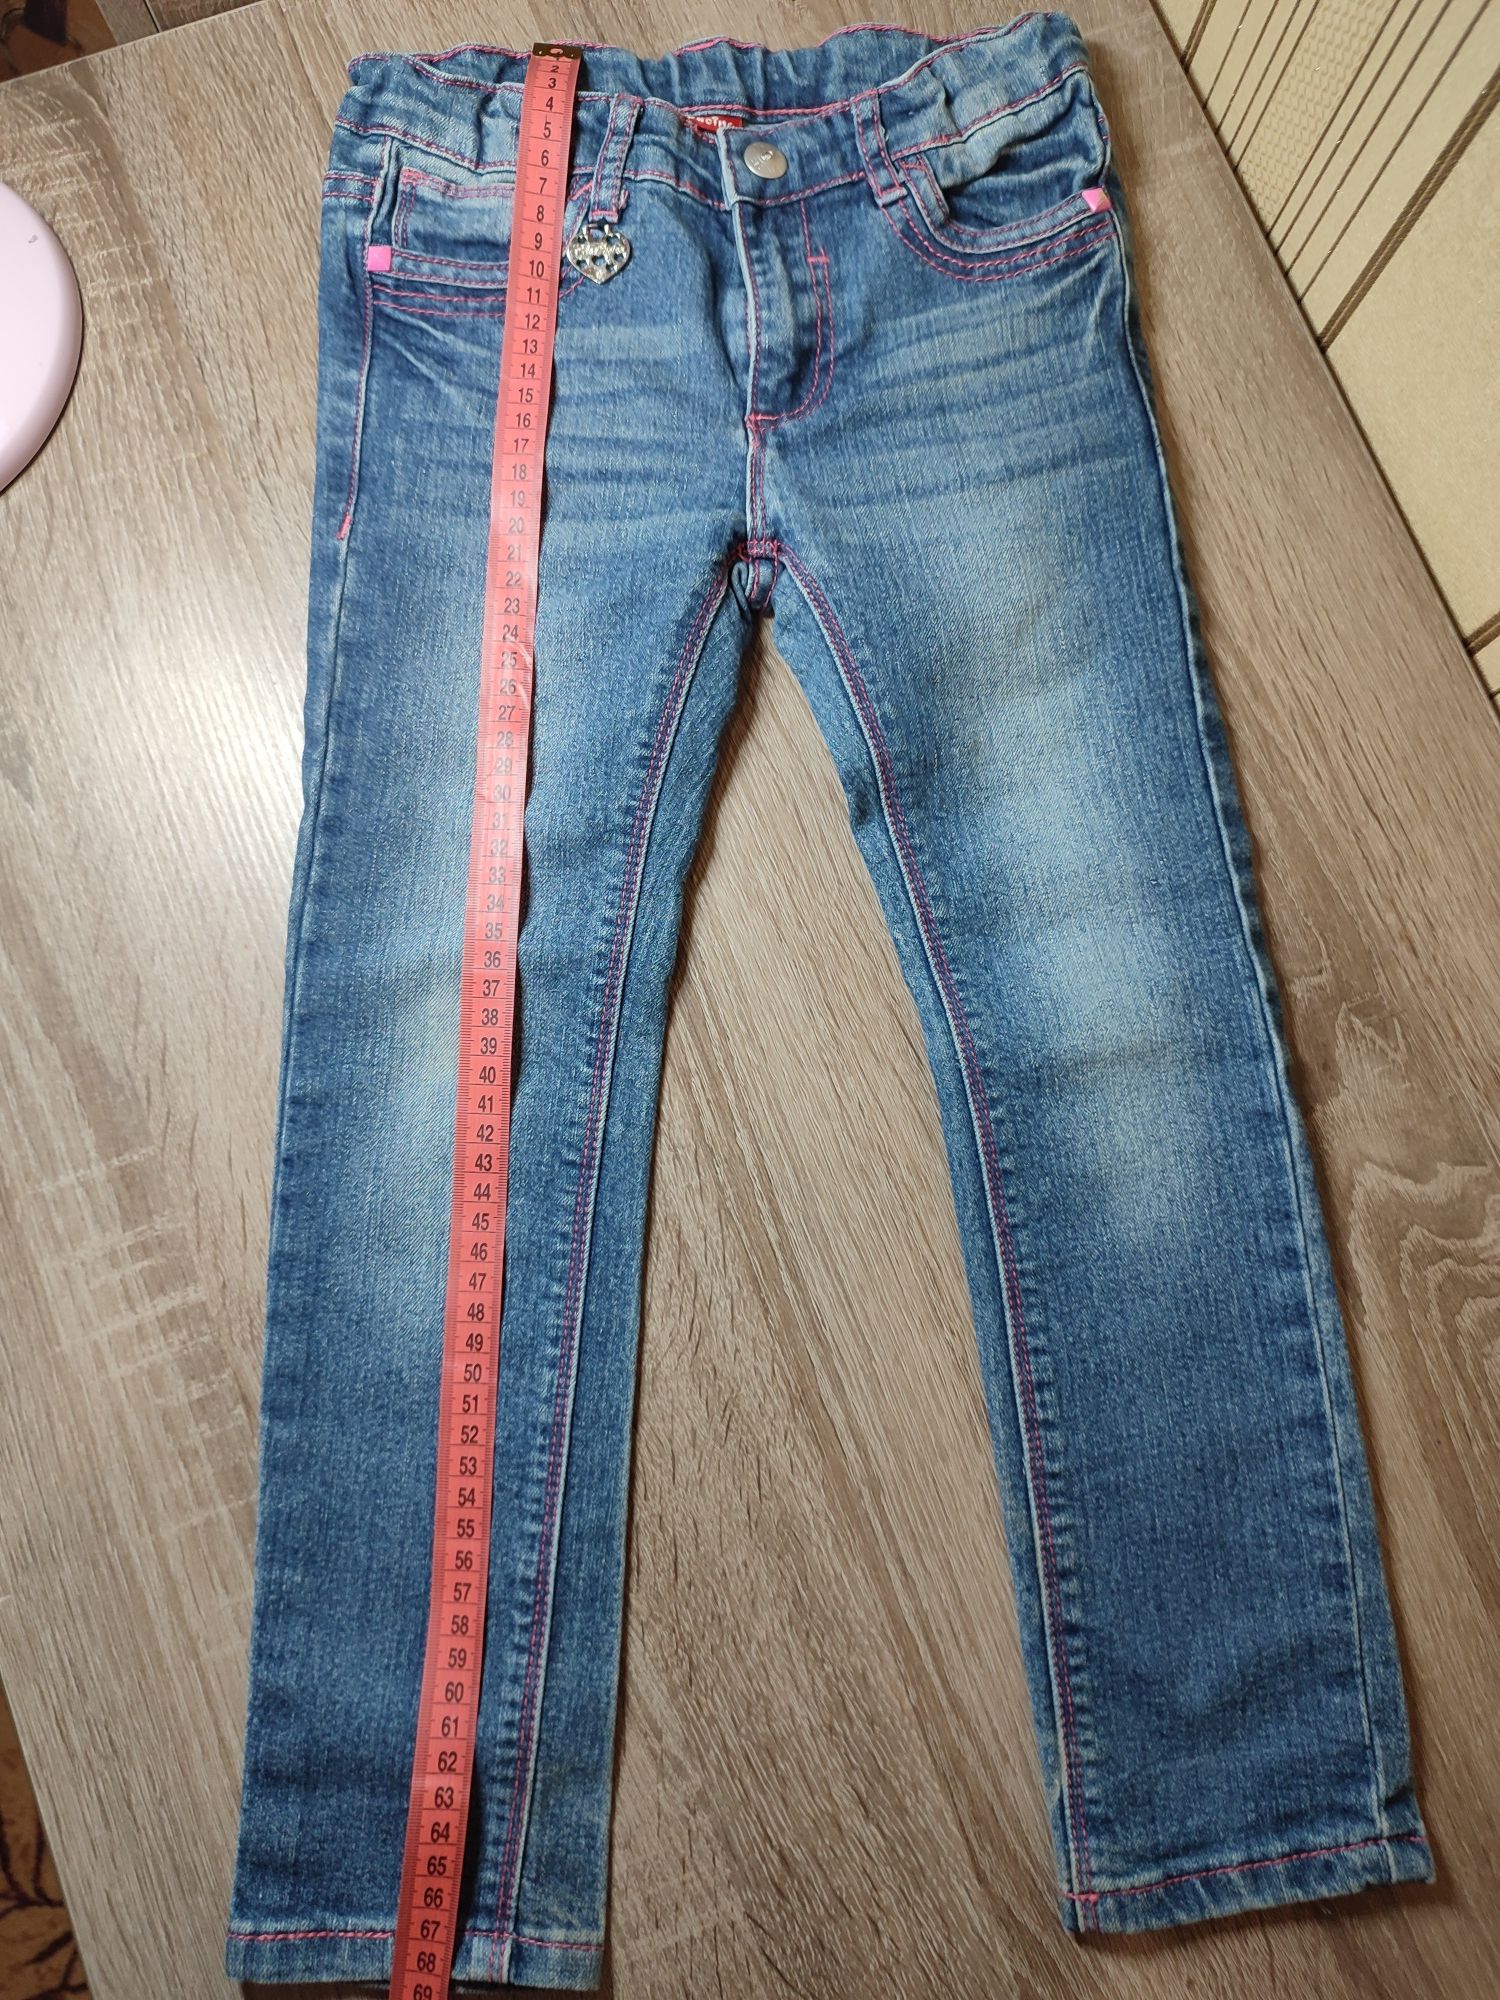 Джинсовый пиджак джинсы рост 110 см, возраст 6-7 лет